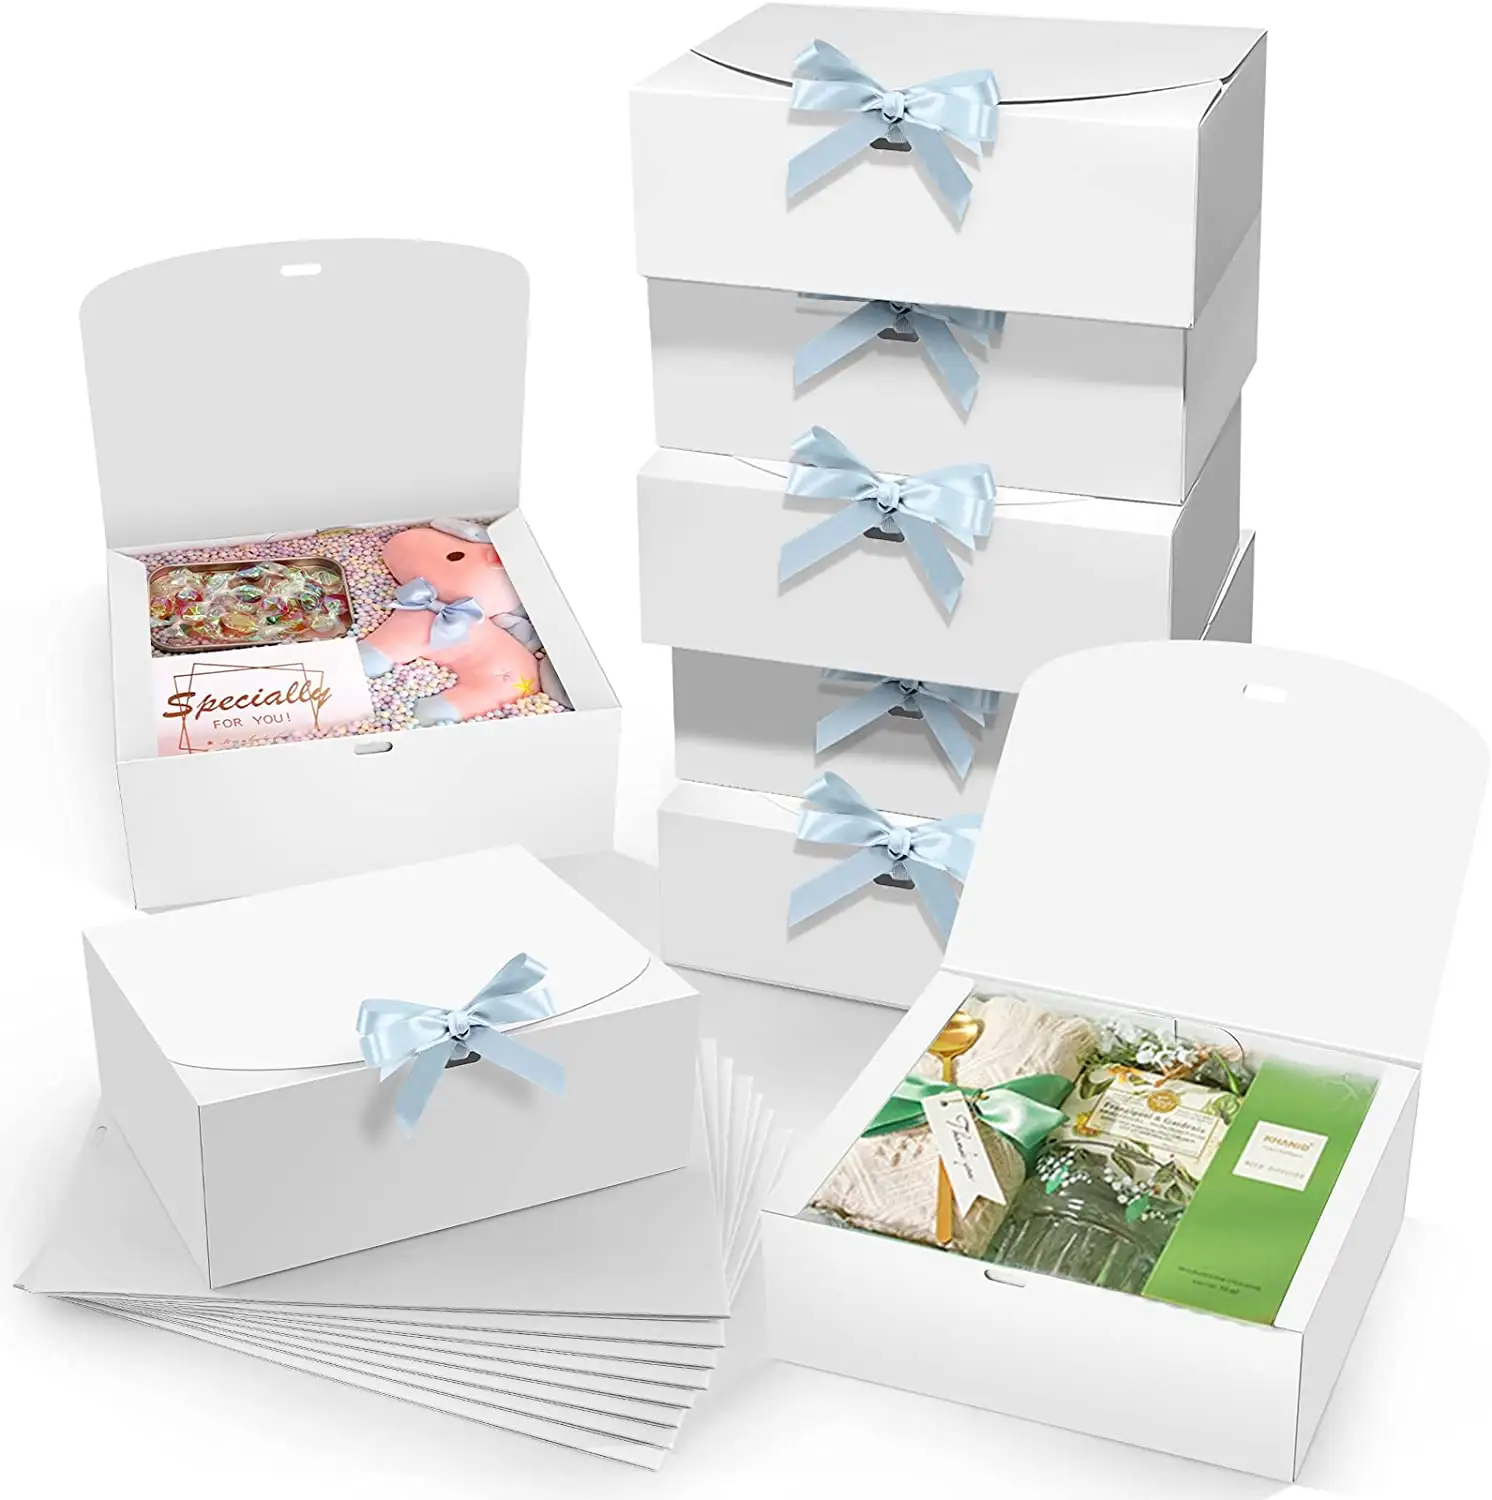 Benutzer definierte vernünftige Preis Kraft Kosmetik Box Brautjungfer Vorschlag Geschenk Papier boxen Set für Hochzeit